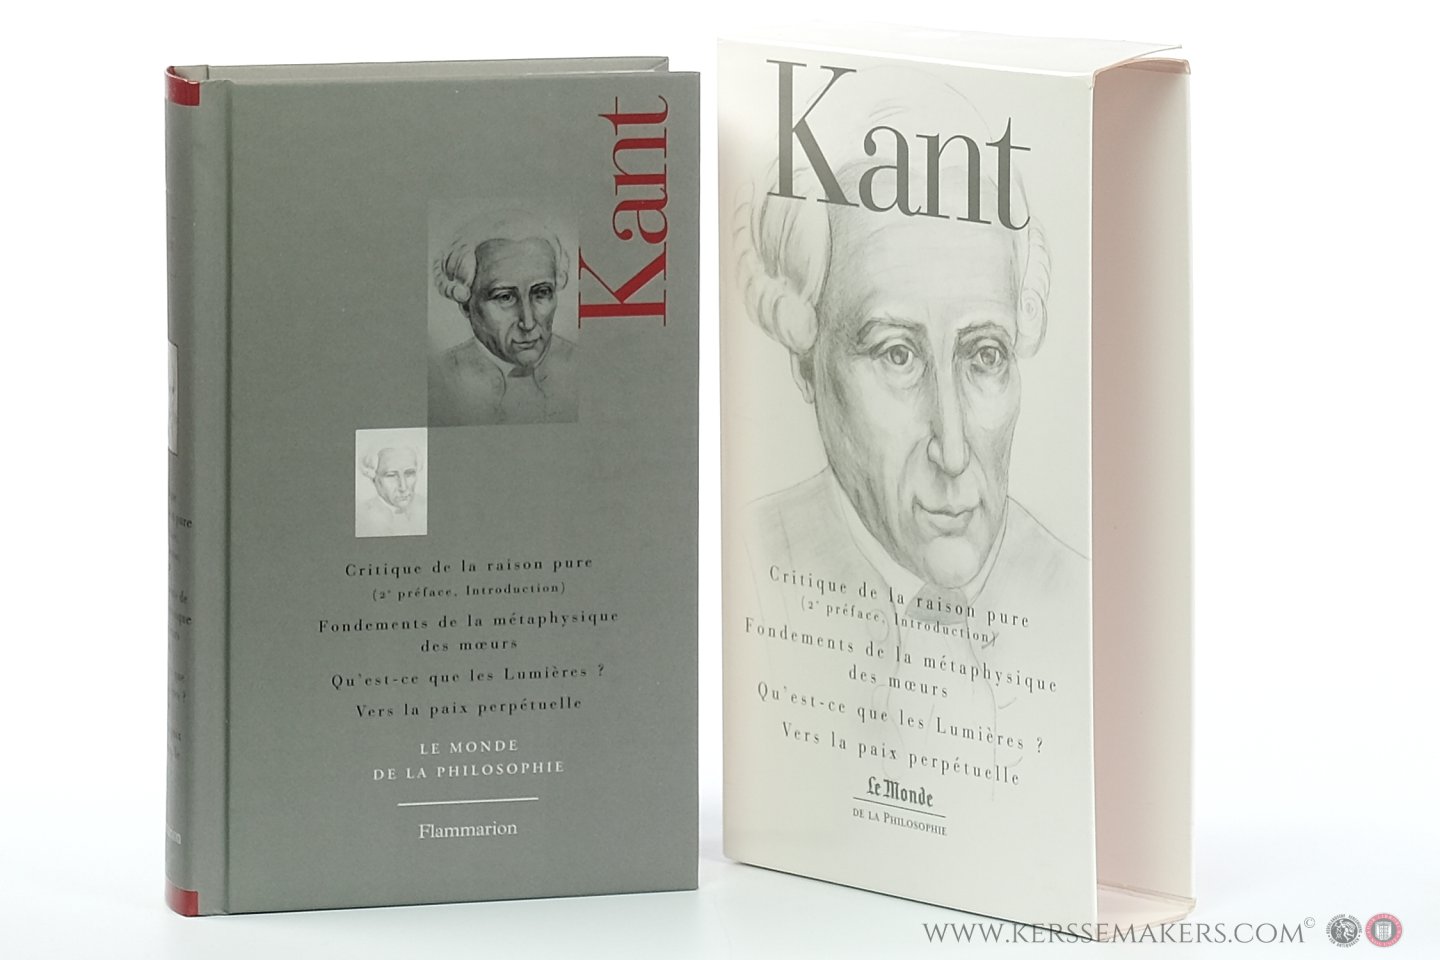 Kant, Emmanuel. - Critique de la raison pure (2e preface,introduction) - fondements de la metaphysique des moeurs - qu'est-ce que les lumieres? - vers la paix perpetuelle.